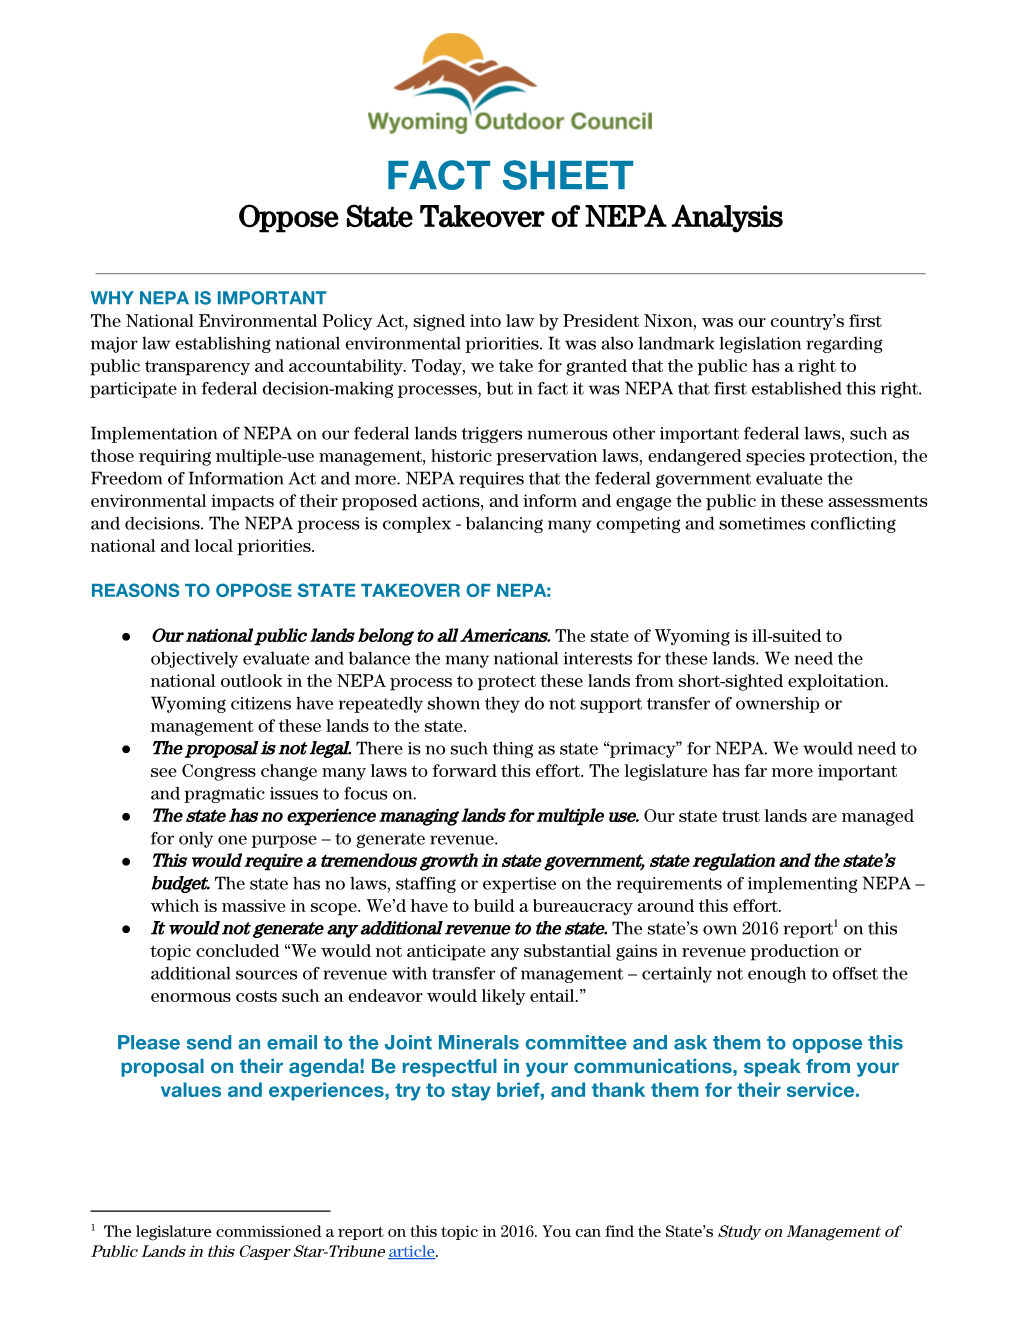 FACT SHEET Oppose State Takeover of NEPA Analysis